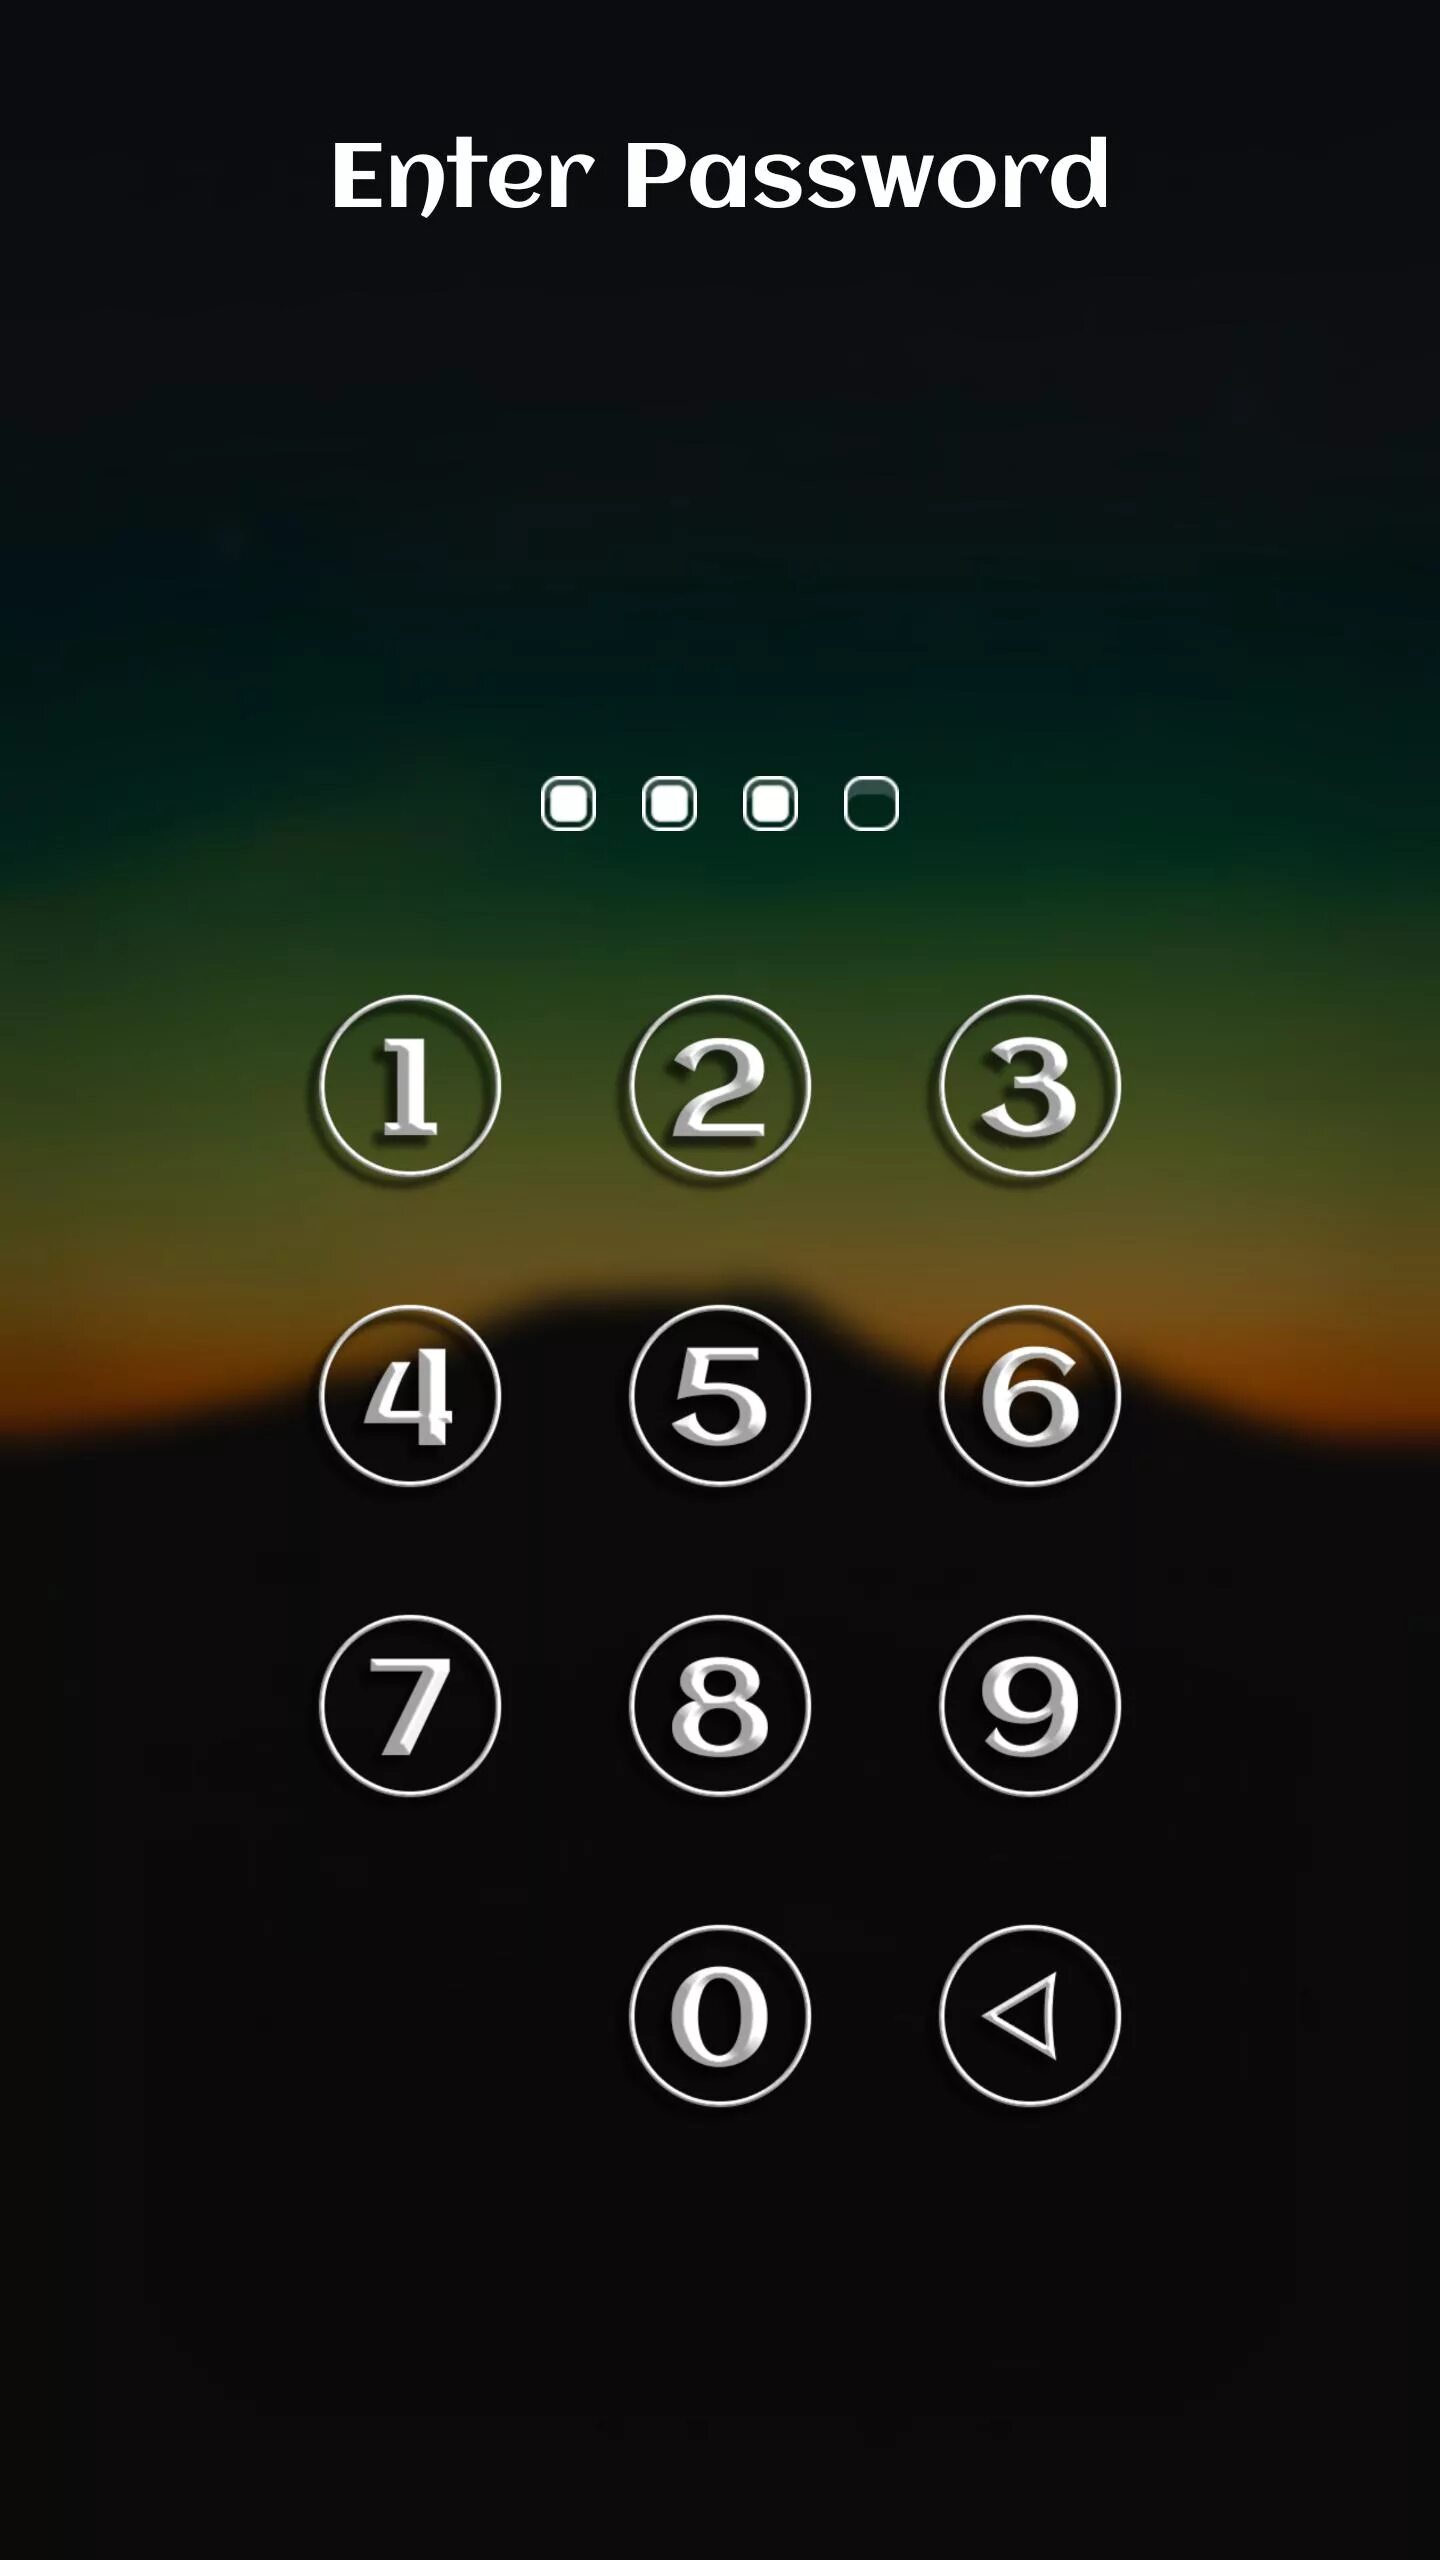 Картинки блокировка для телефона. Экран блокировки. Экран блокировки телефона. Экран блокировки цифры. Значок блокировки телефона.